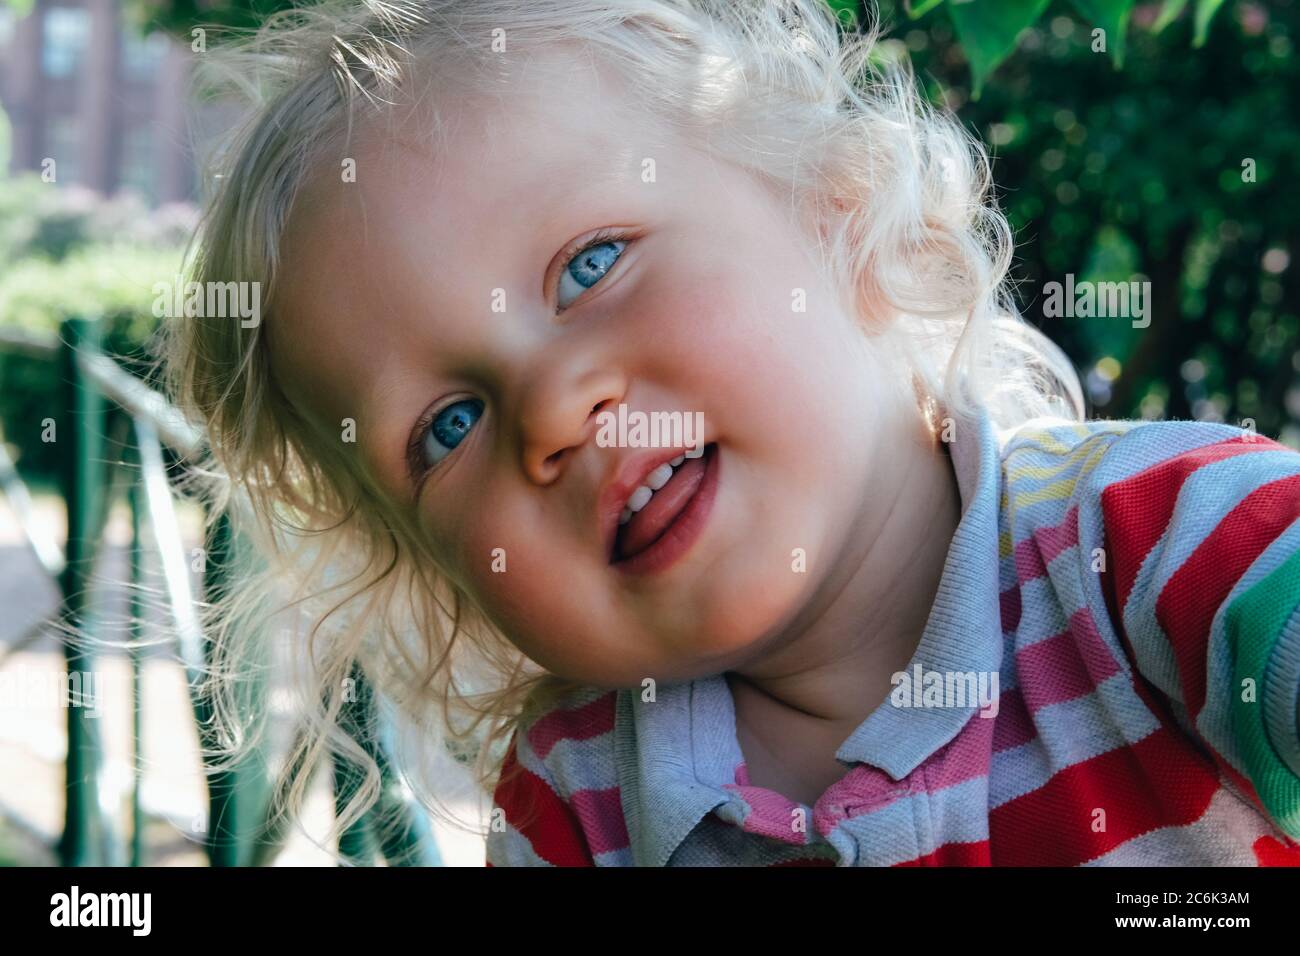 Ritratto di un simpatico ragazzo felice con capelli biondi e occhi blu, che cita un cappello, sorride e gioca nel parco. Torna al concetto normale. Foto Stock